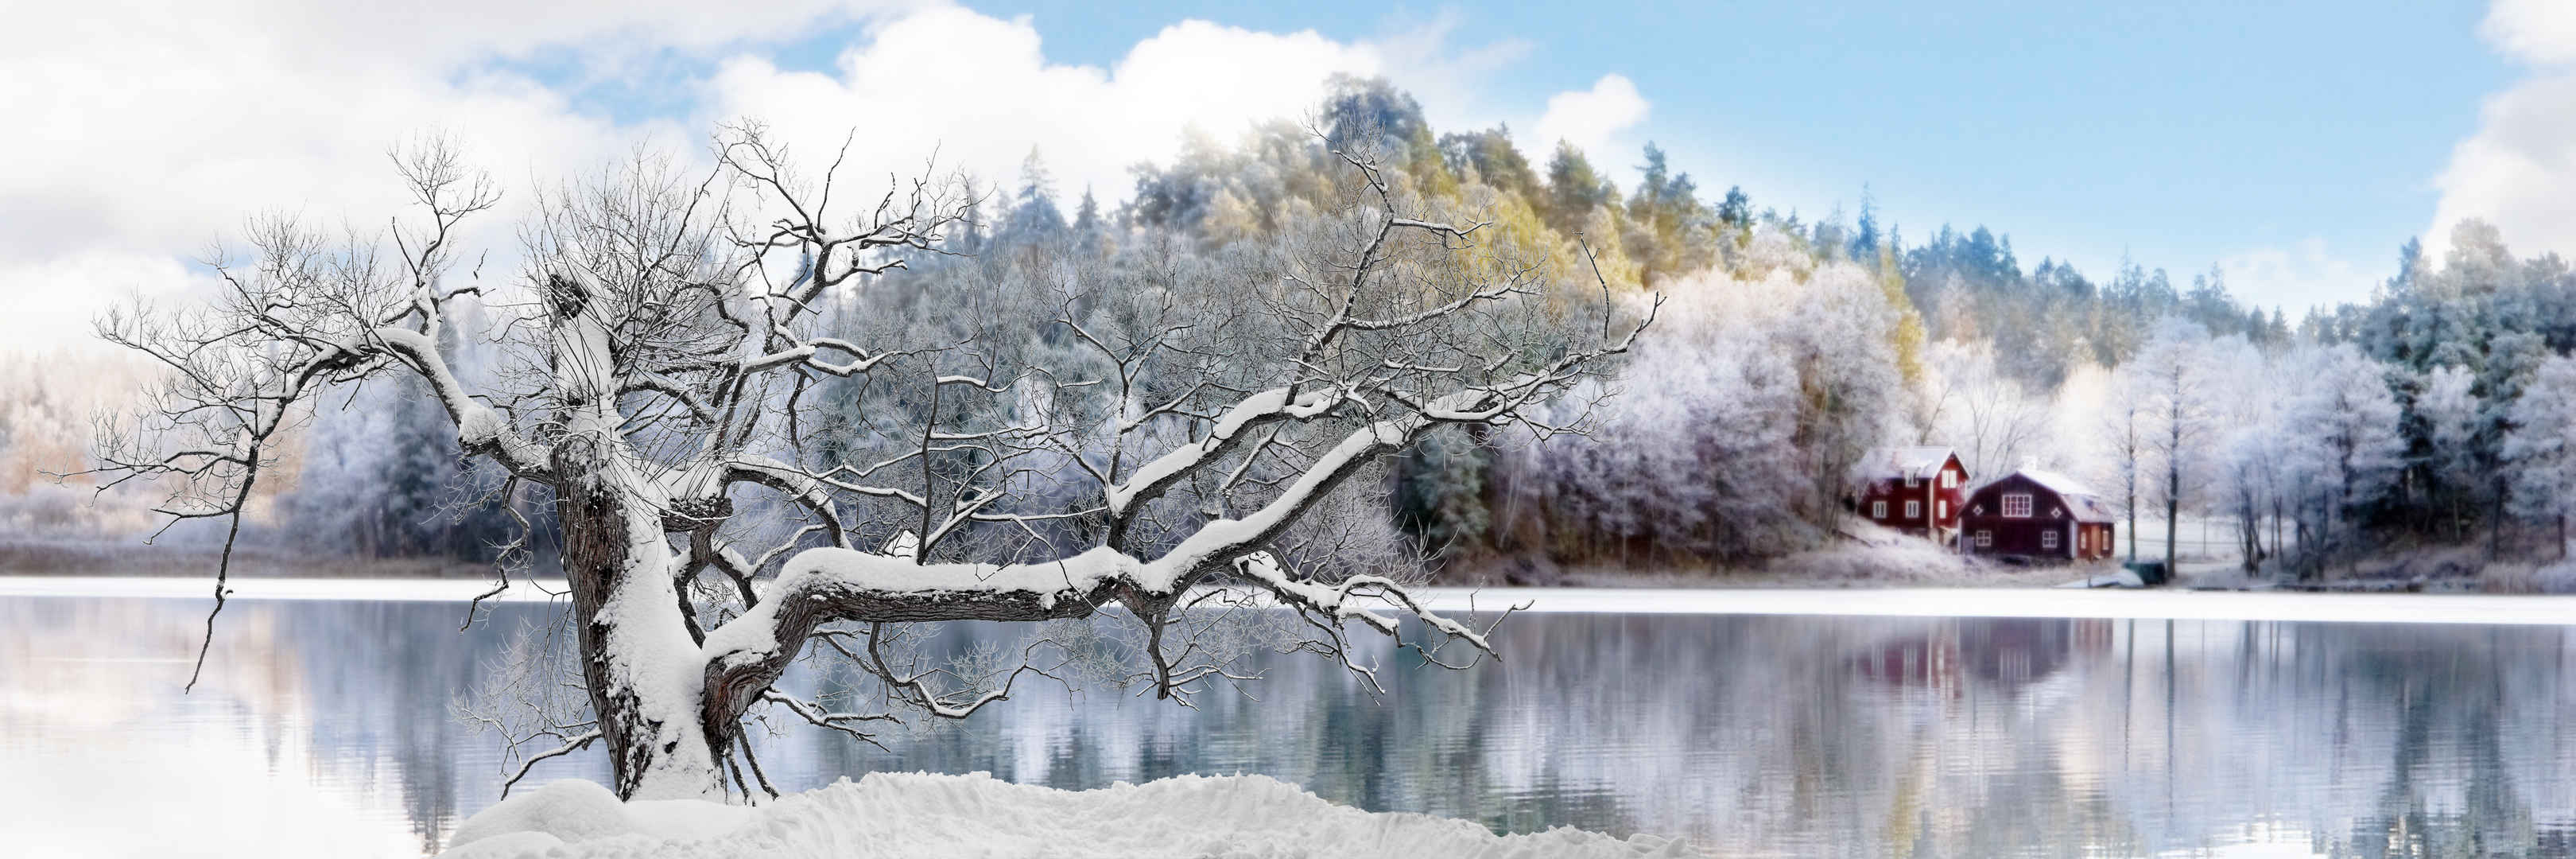 冬天寒冷老树挂雪壁纸图片